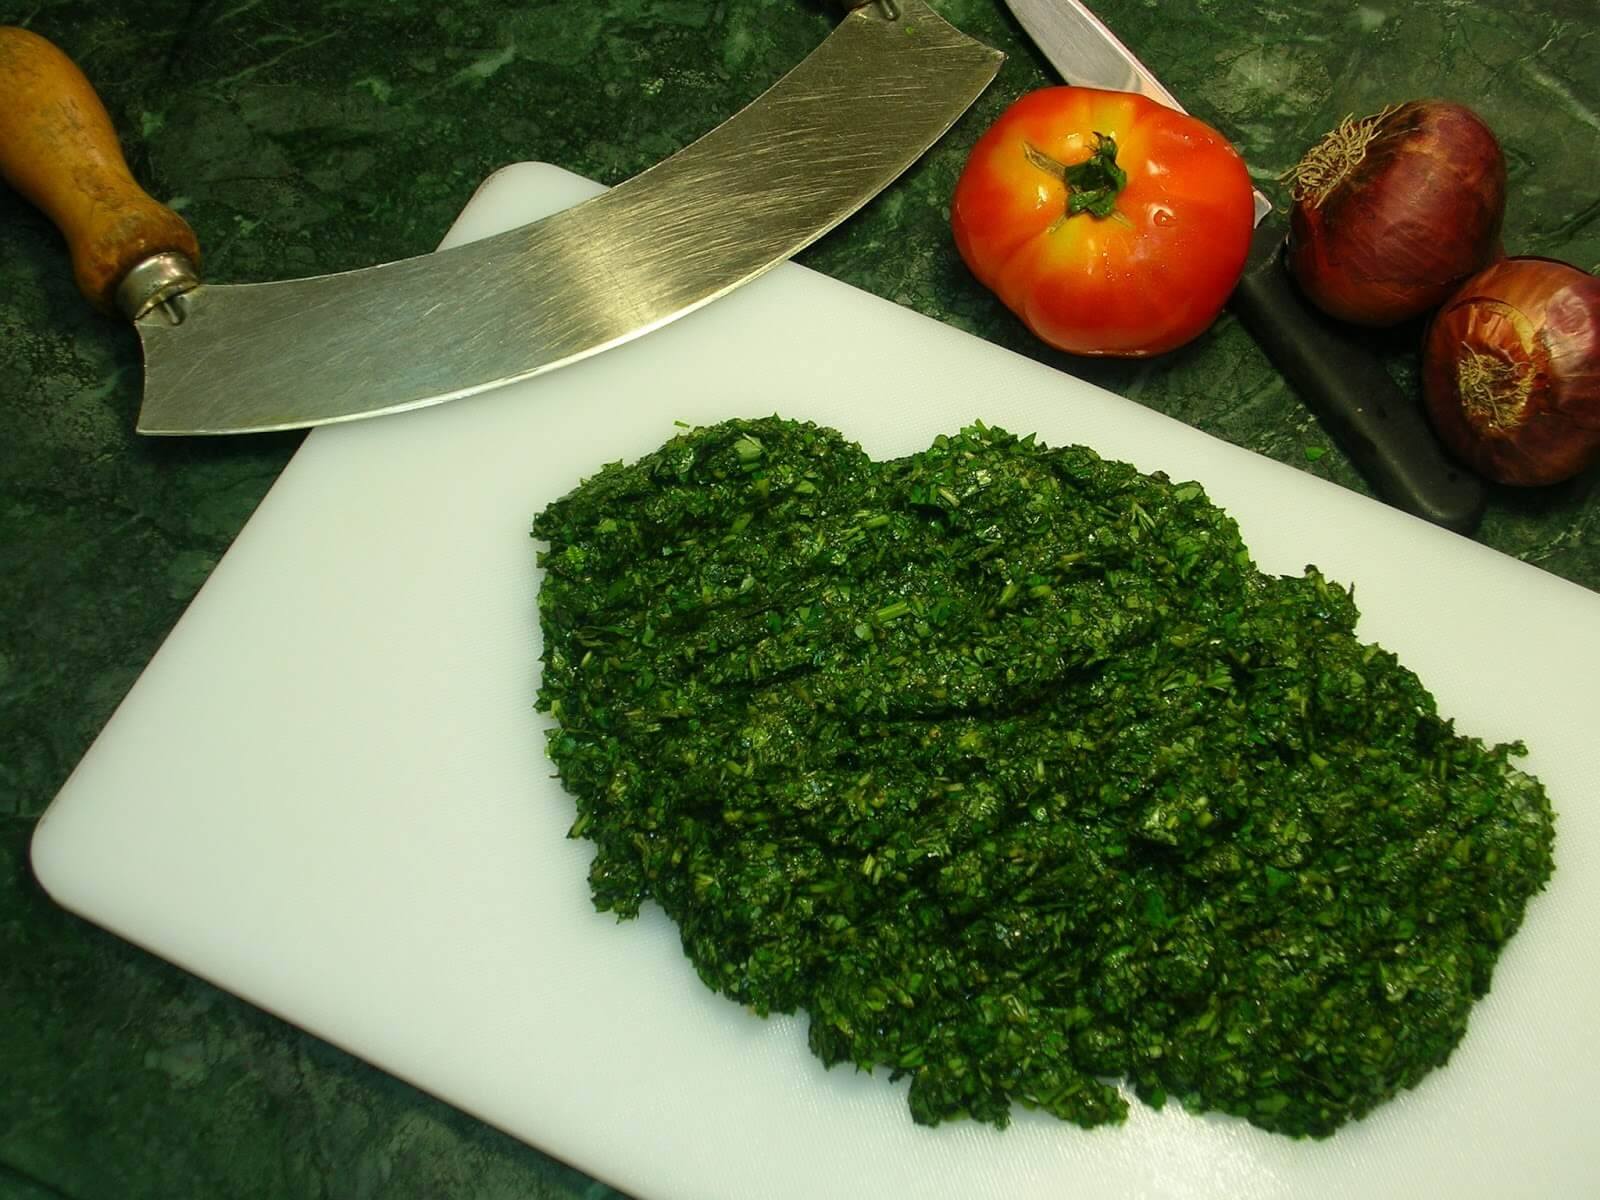 طريقة تفريز الملوخية بدون ما تغير طعمها وهتفضل خضراء زي الملوخية الطازجة